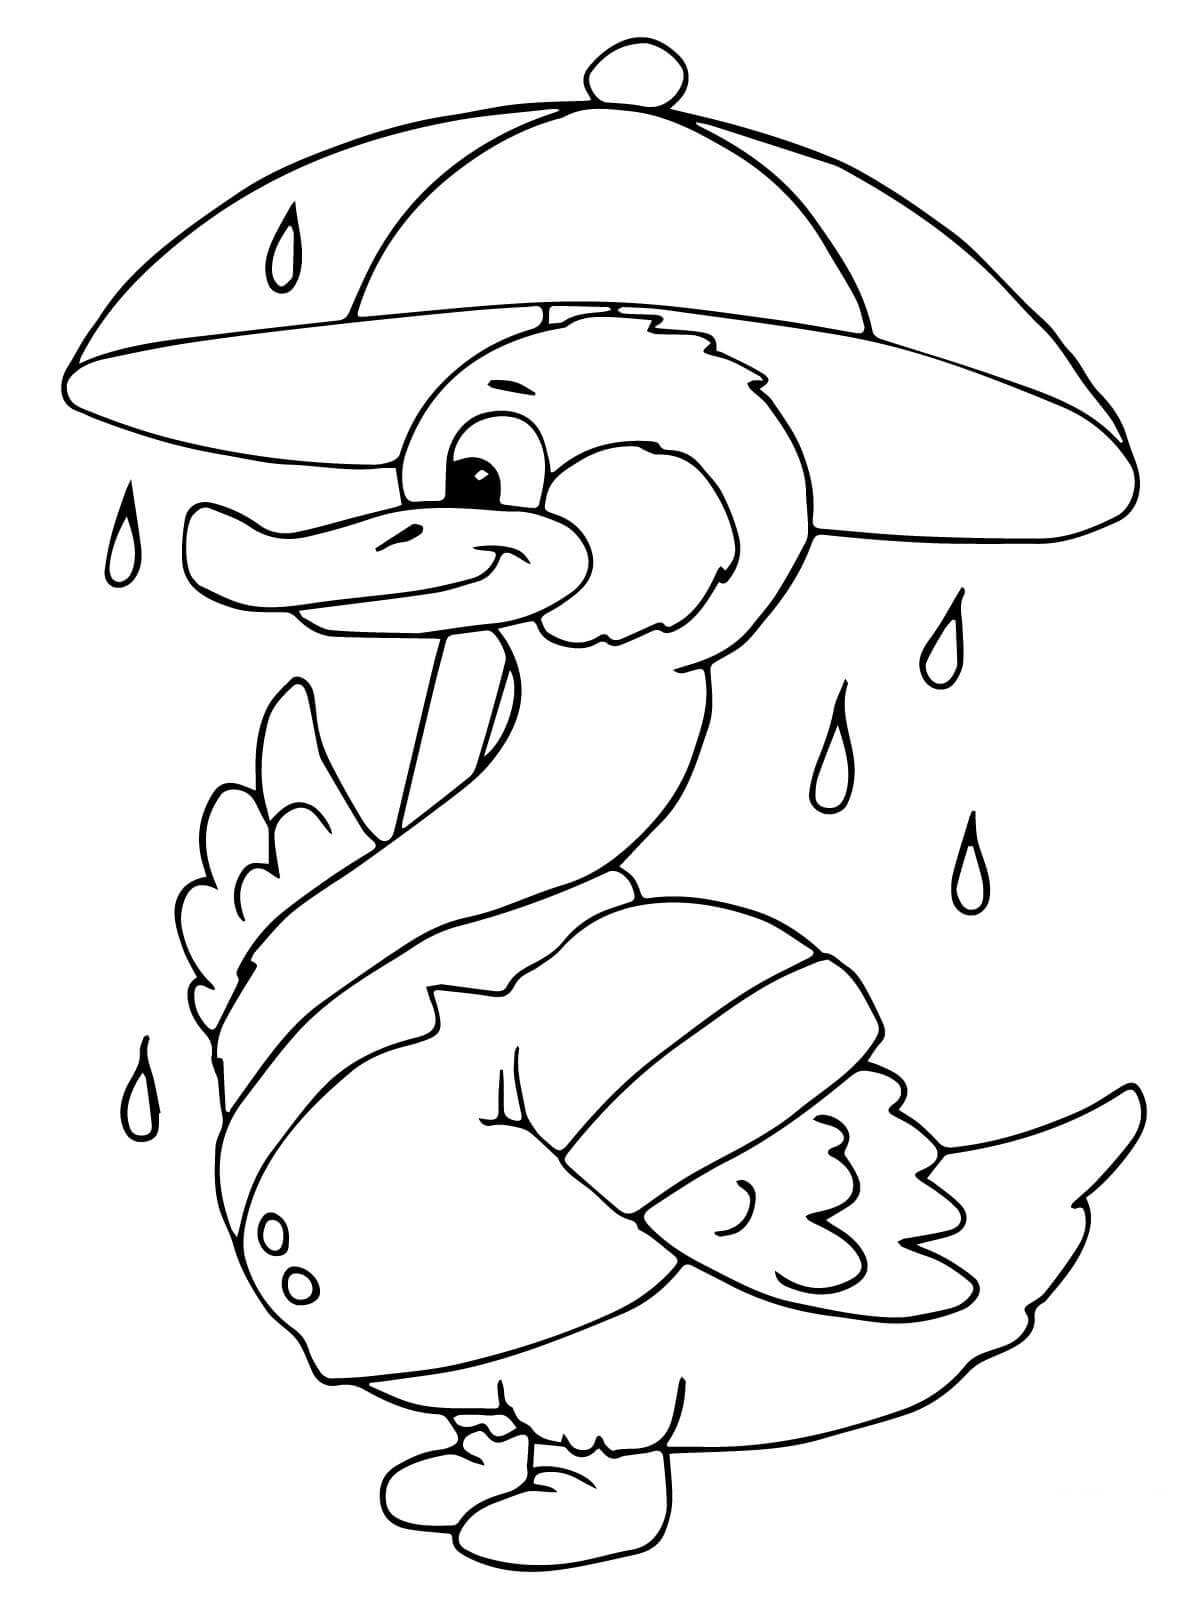 Pato com guarda-chuva sob a chuva from Patos